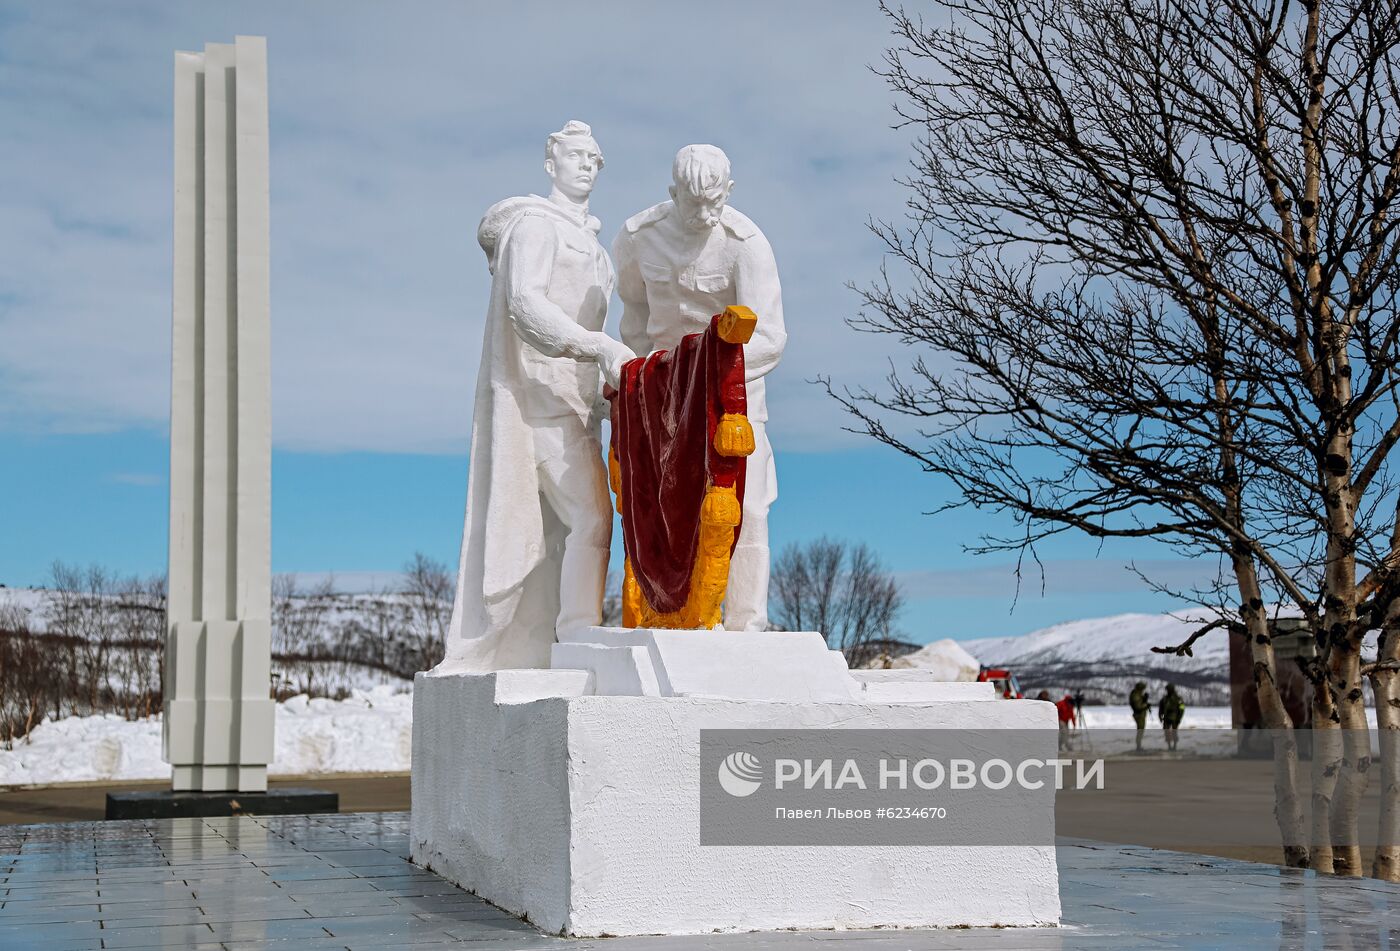 Возложение цветов в мемориальном комплексе "Долина Славы" в Мурманской области